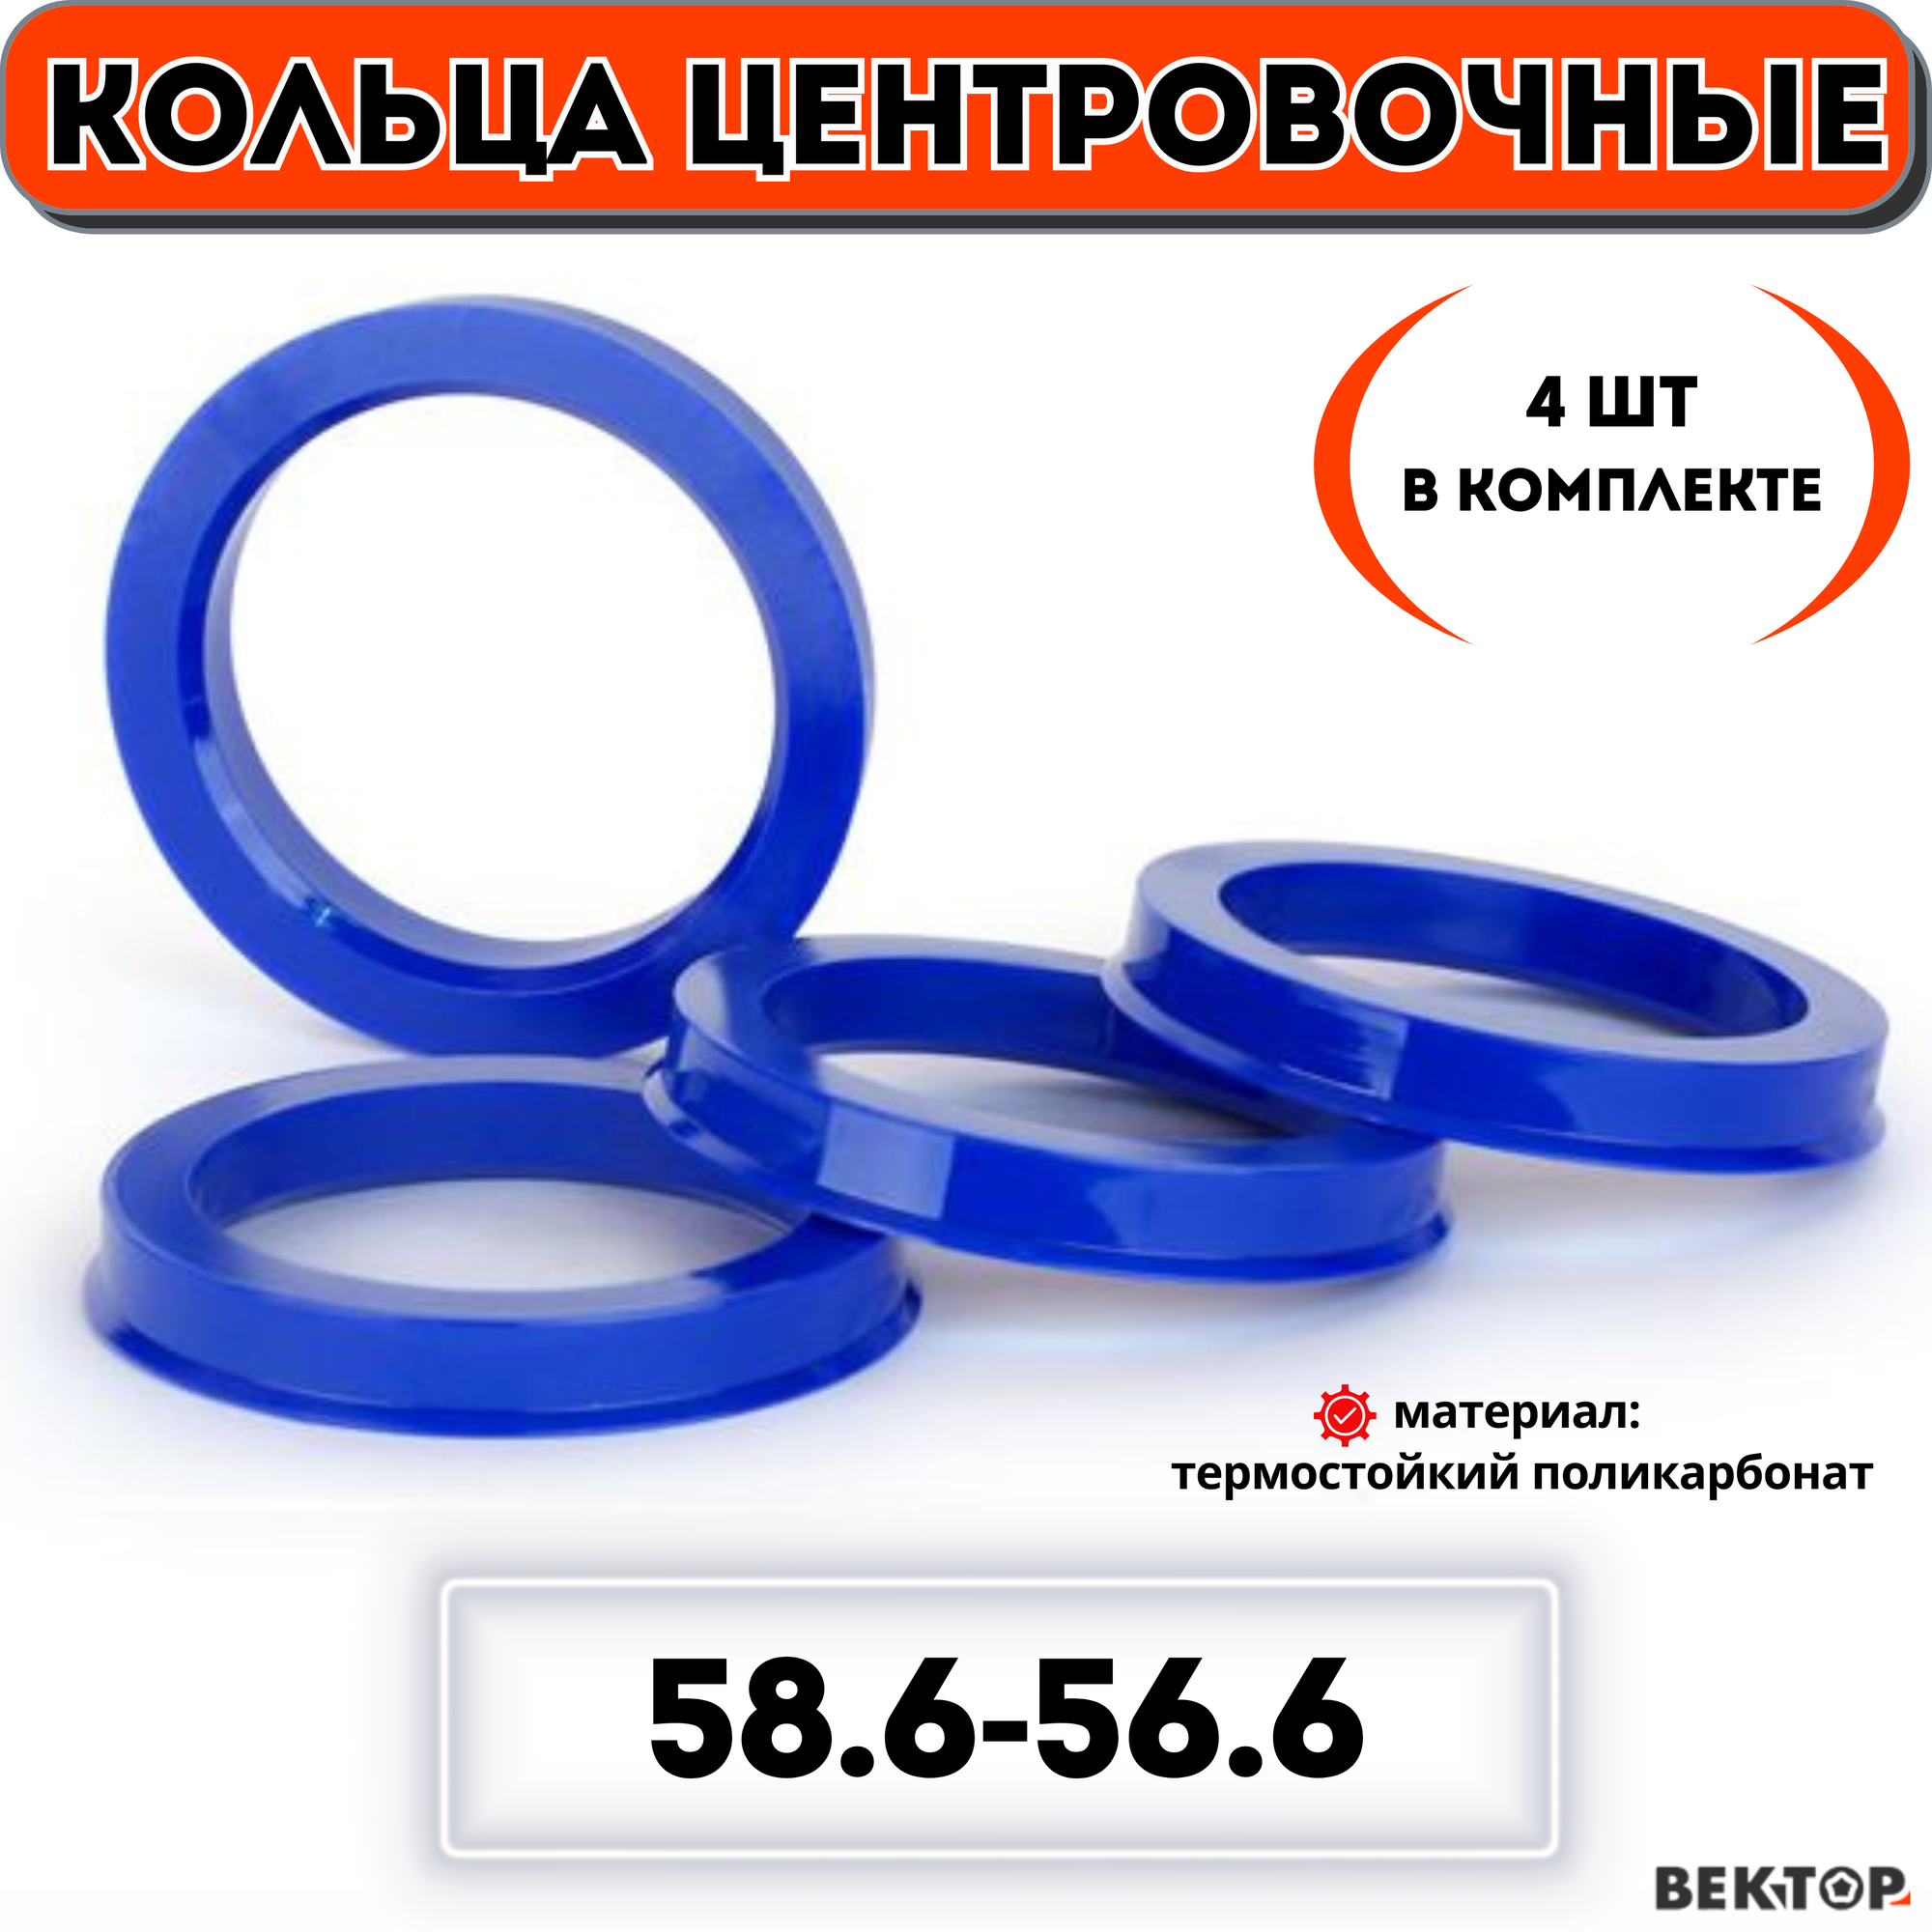 Кольца центровочные для автомобильных дисков 586-566 "вектор" (к-т 4 шт.)